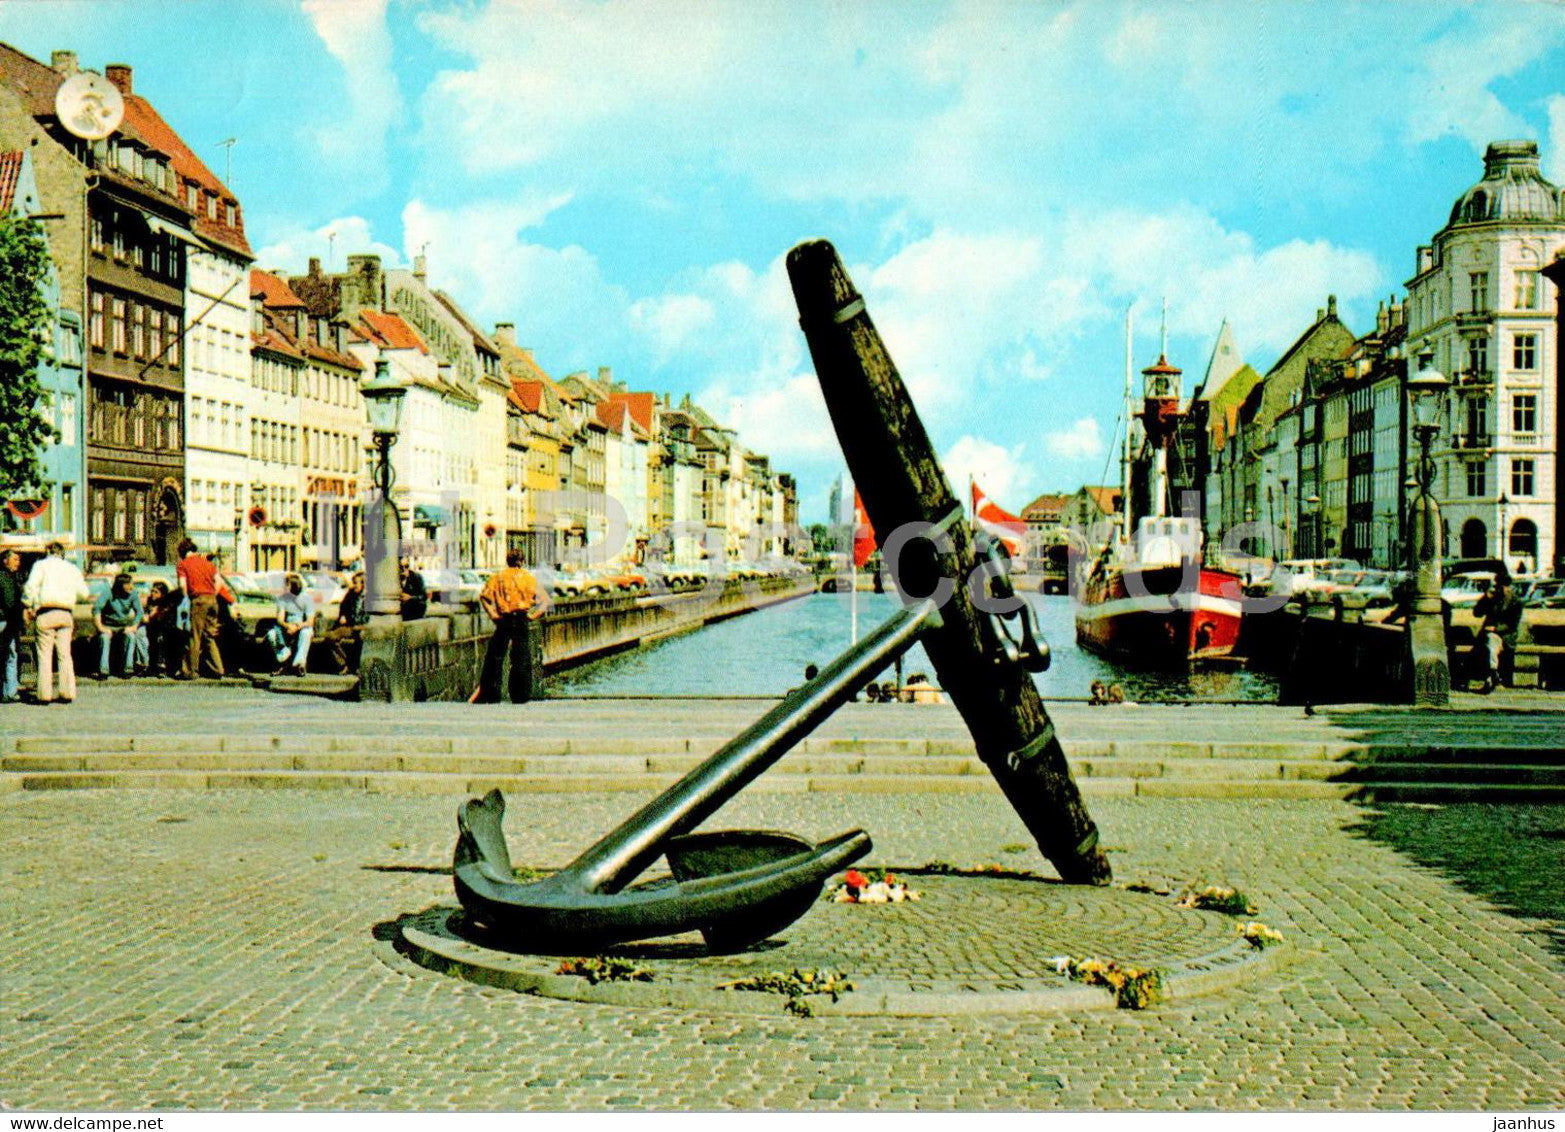 Copenhagen - Kopenhagen - Nyhavn - Mindeankeret - The Memorial Anchor - 149 - Denmark - unused - JH Postcards